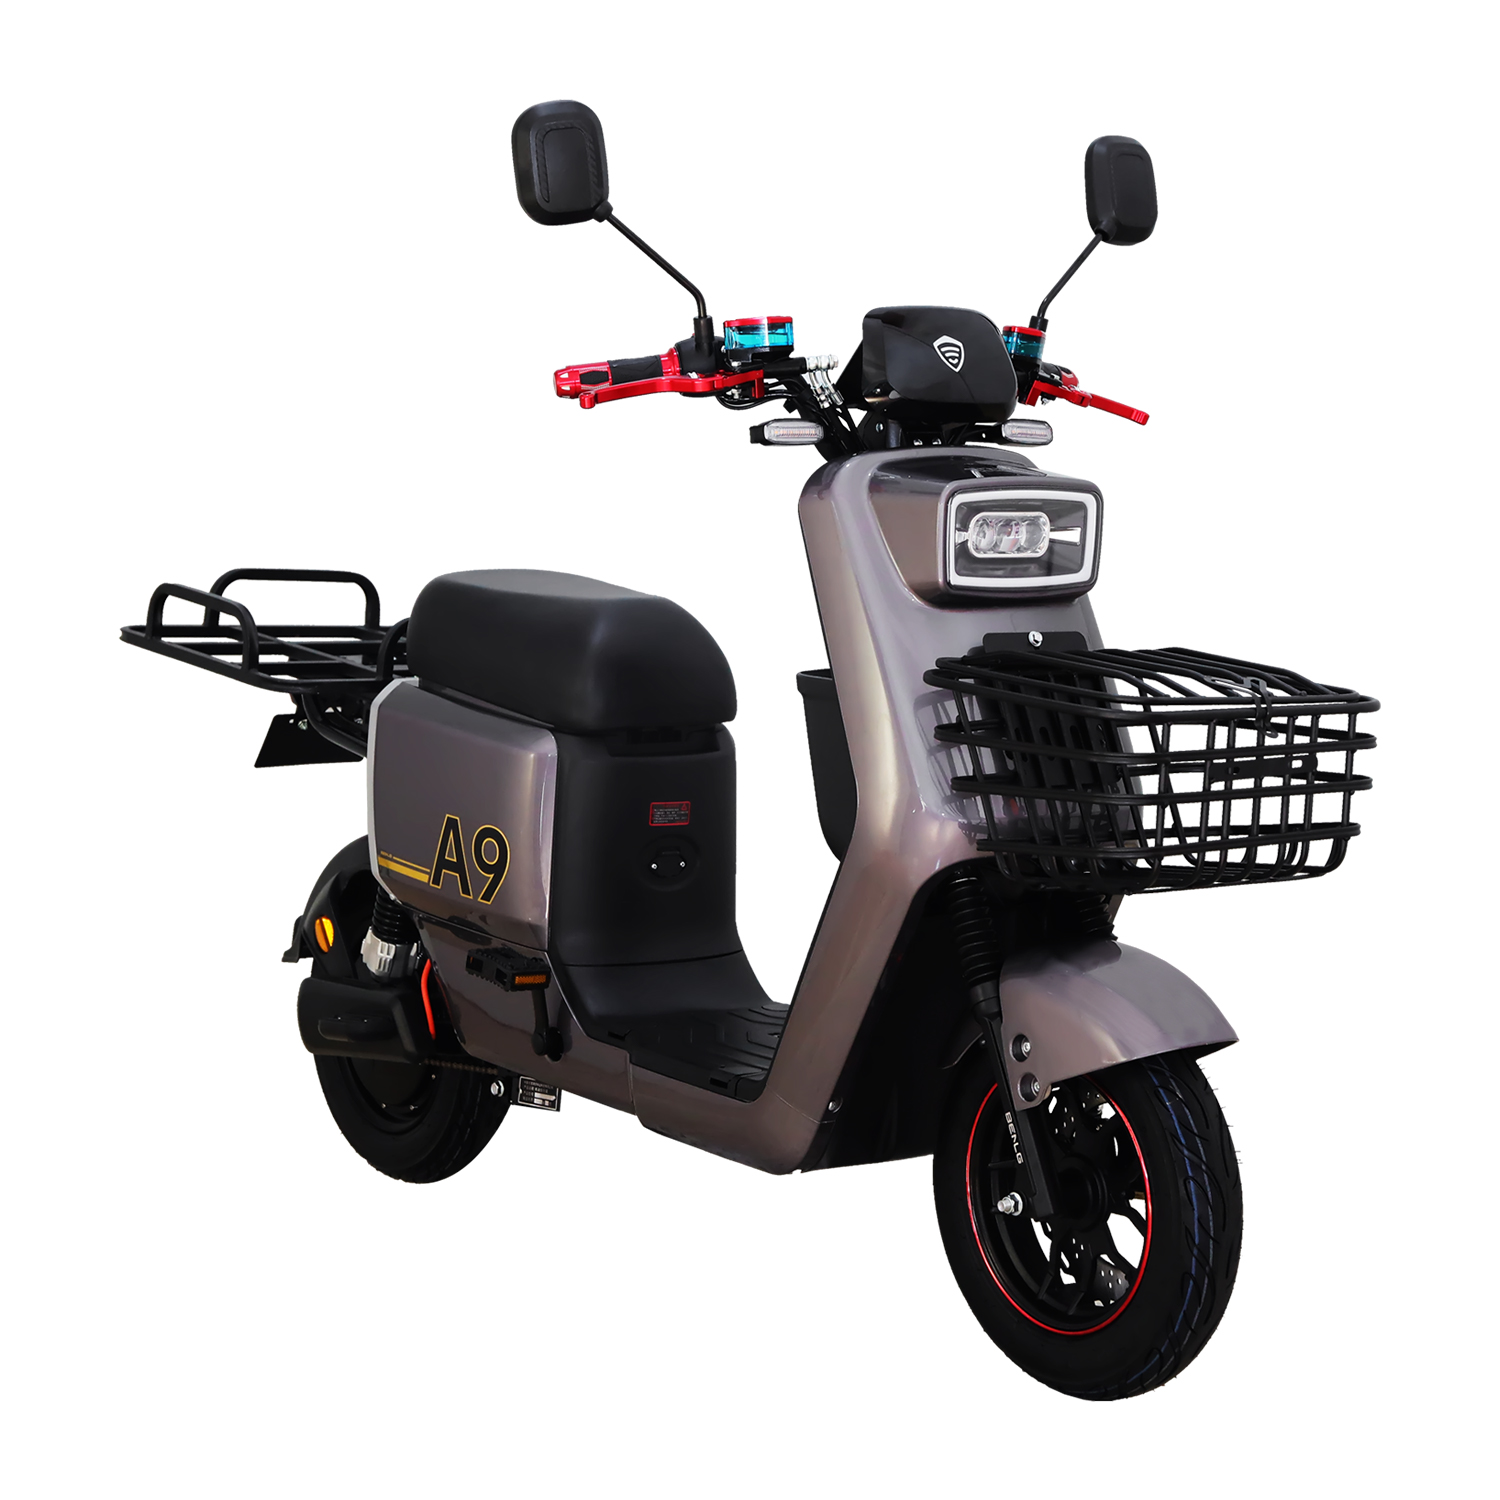 Benlg A9 motocykl elektryczny 2 koła elektromobilny pojazd rowerowy na sprzedaż 1000W 1500W silnik 48V litowo 2023 chiny gorąca sprzedaż hurtowa